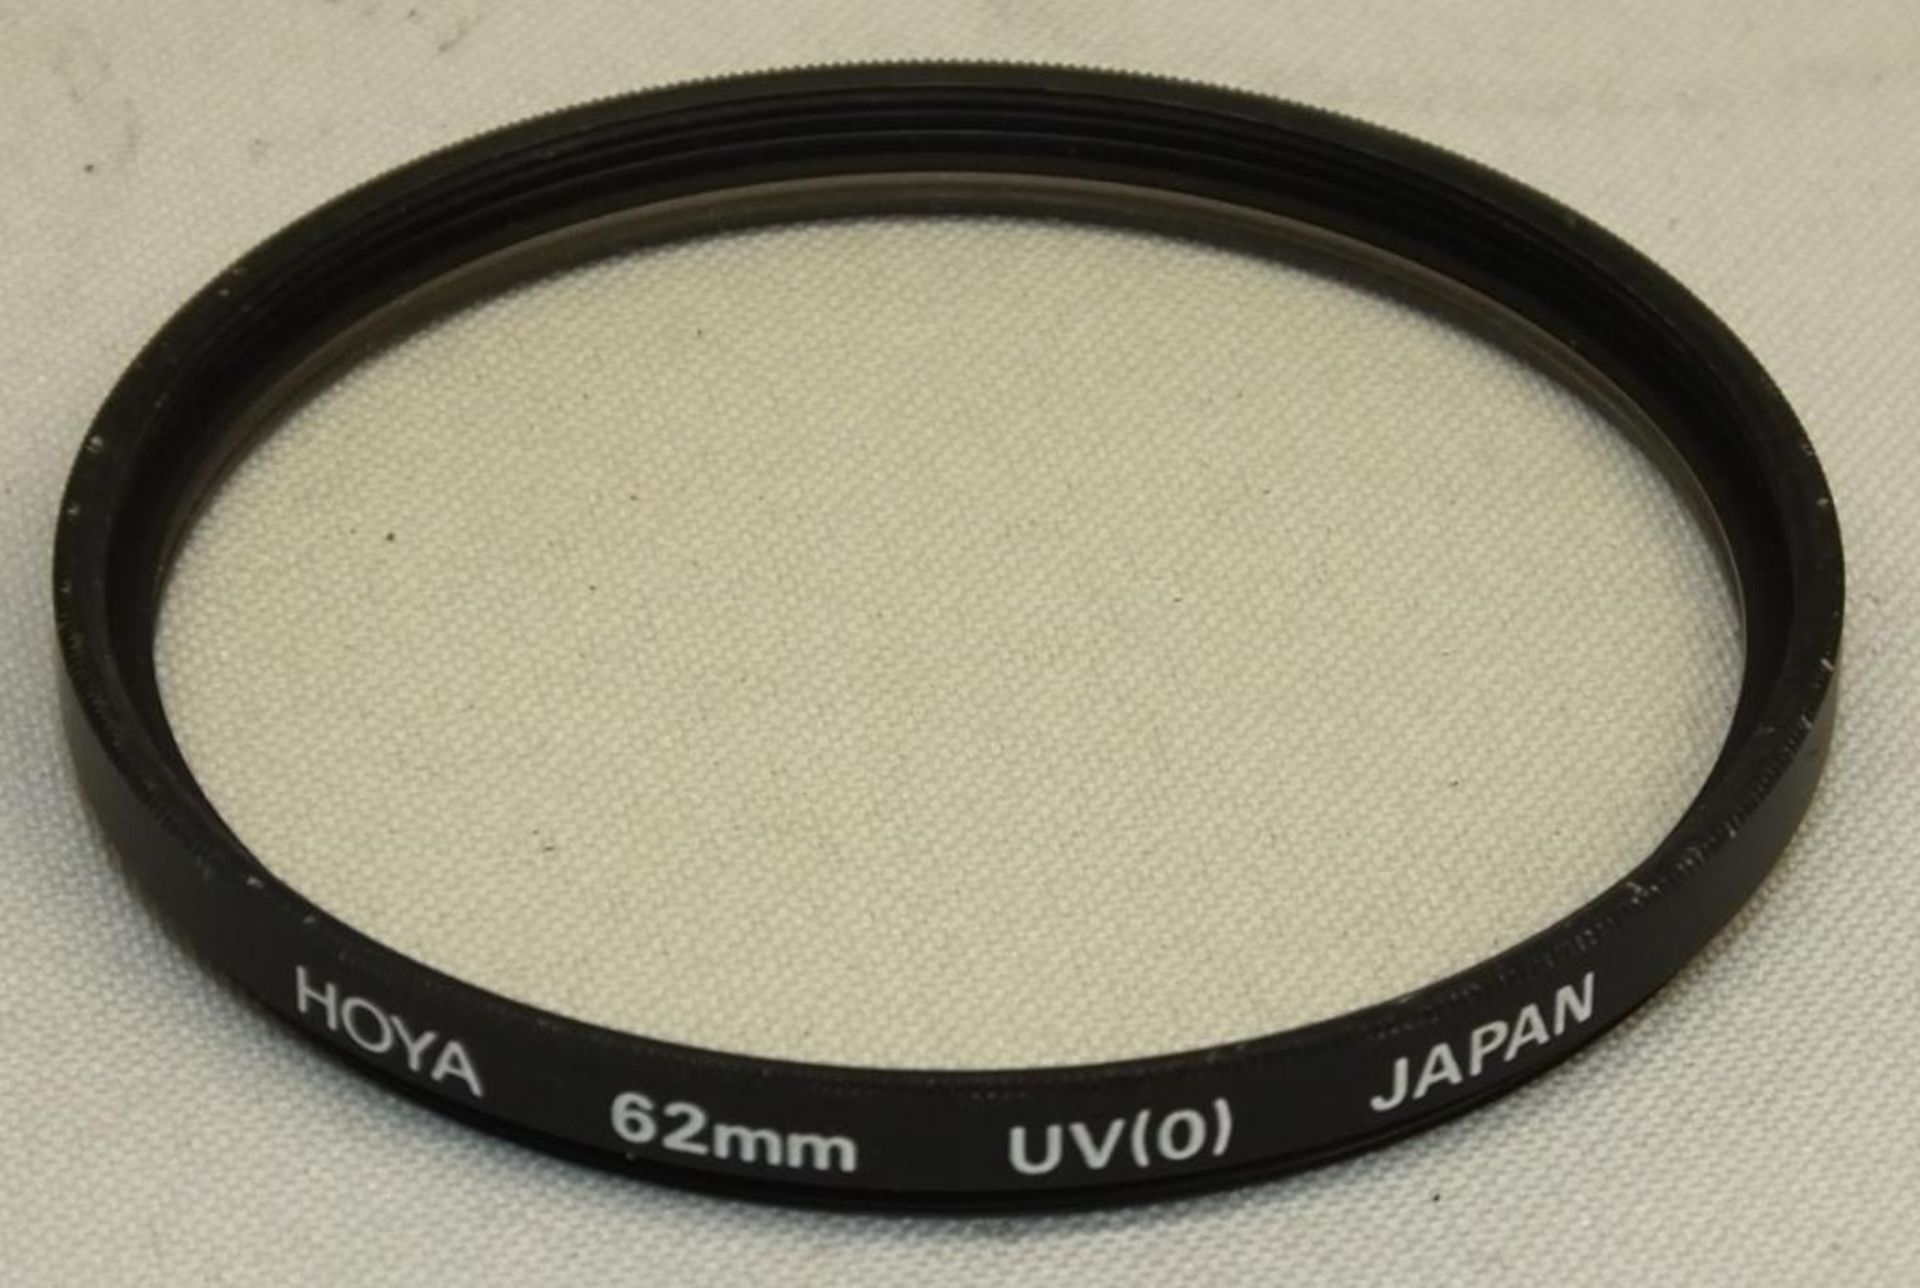 Nikon AF Nikkor 70-210mm - 1:4-5.6 Lens - Serial No. - 2432162 with HOYA 62mm UV(O) Filter - Image 6 of 6